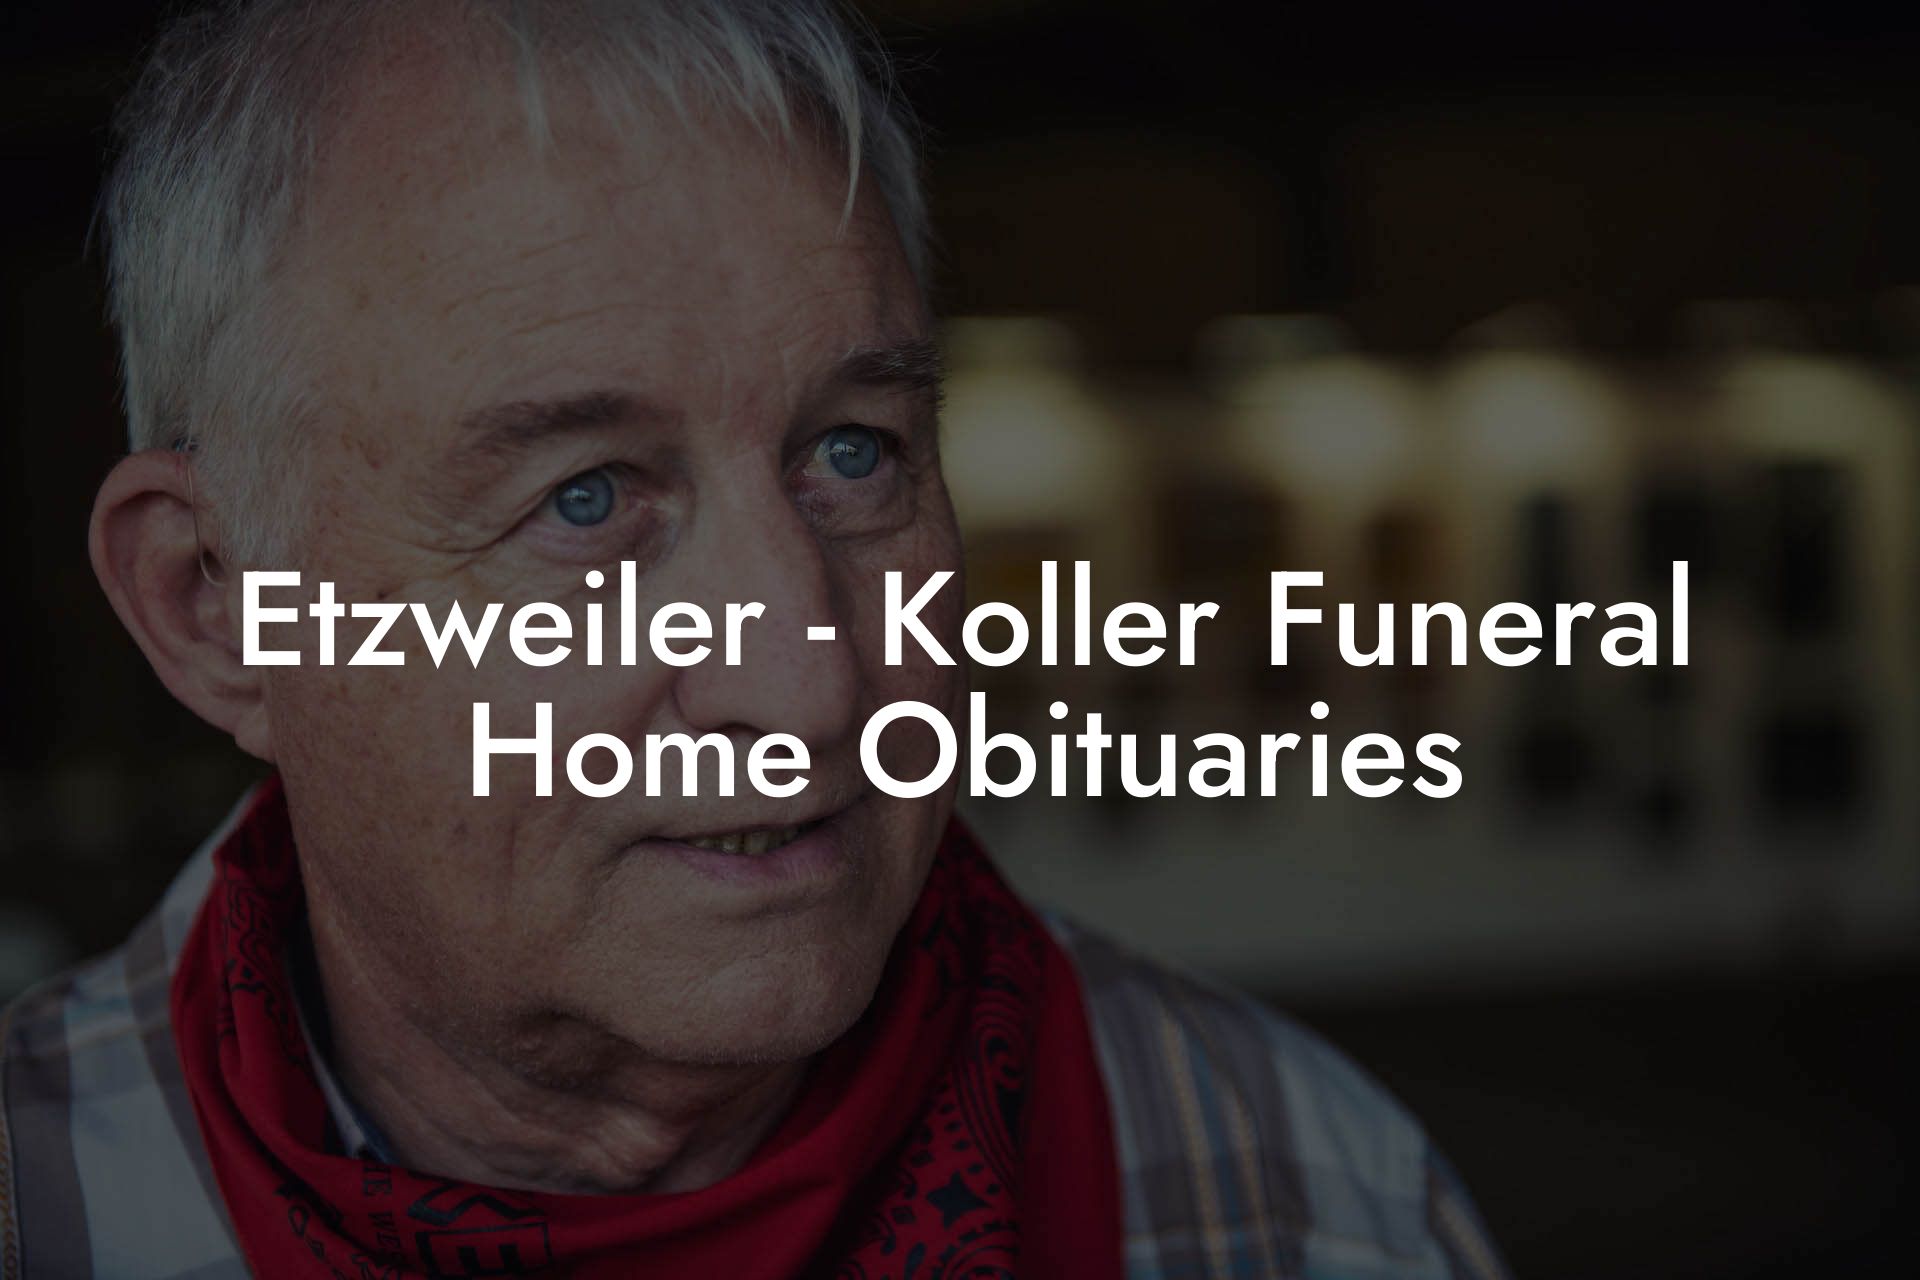 Etzweiler - Koller Funeral Home Obituaries